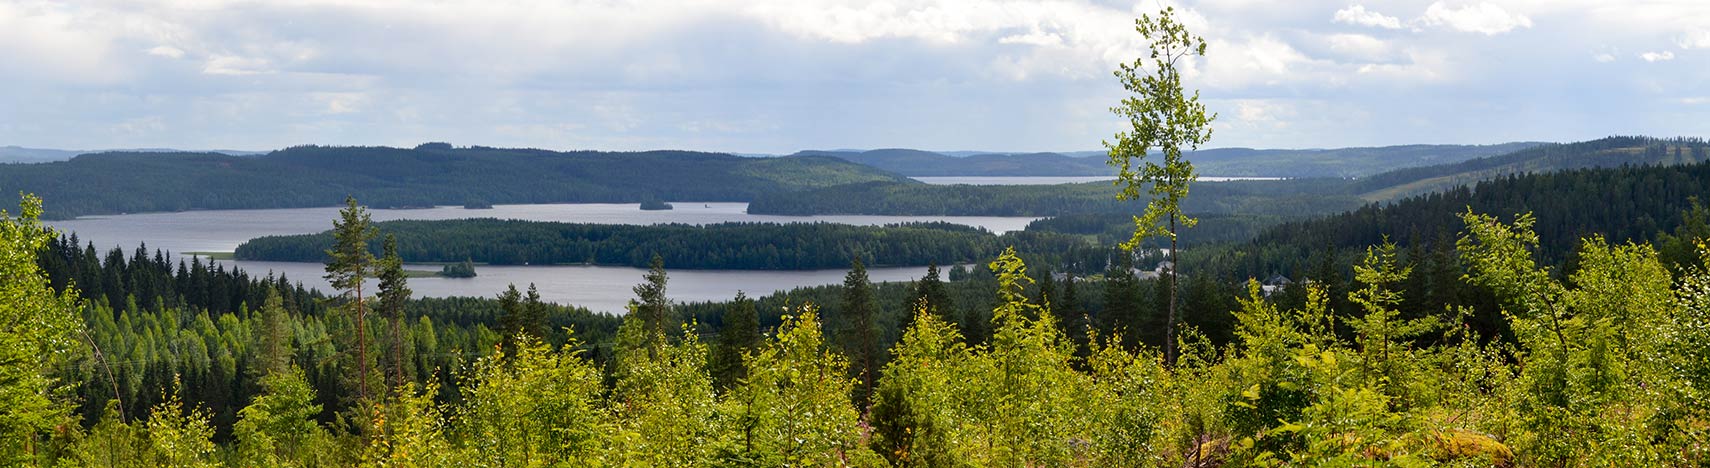 Lake Päijänne in Central Finland